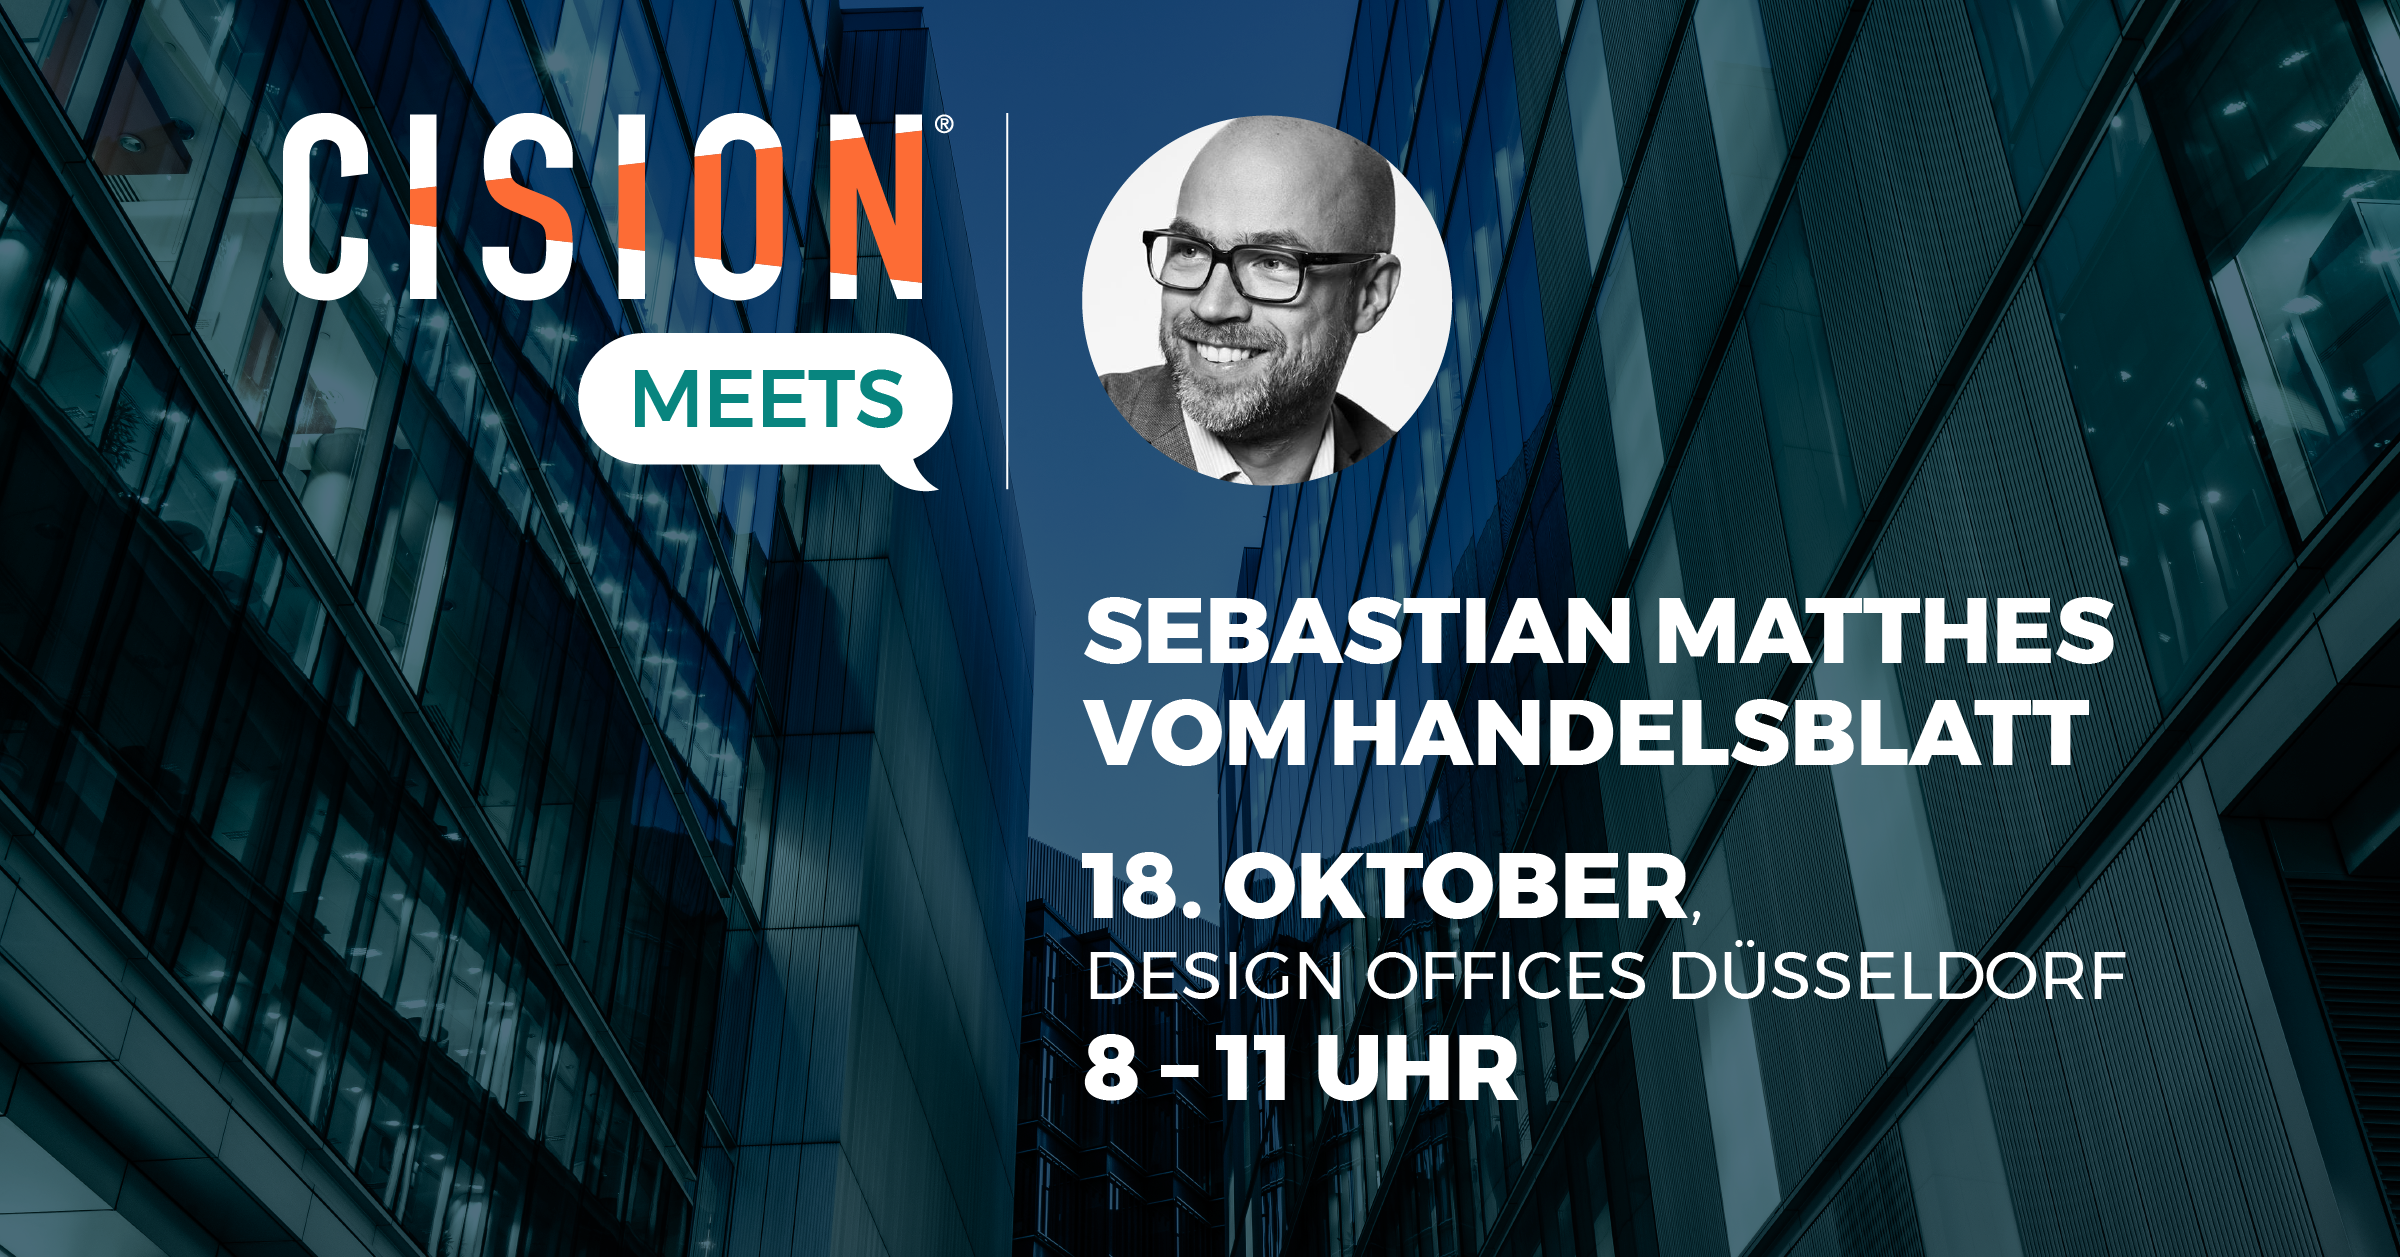 Cision Meets Sebastian Matthes (Handelsblatt)